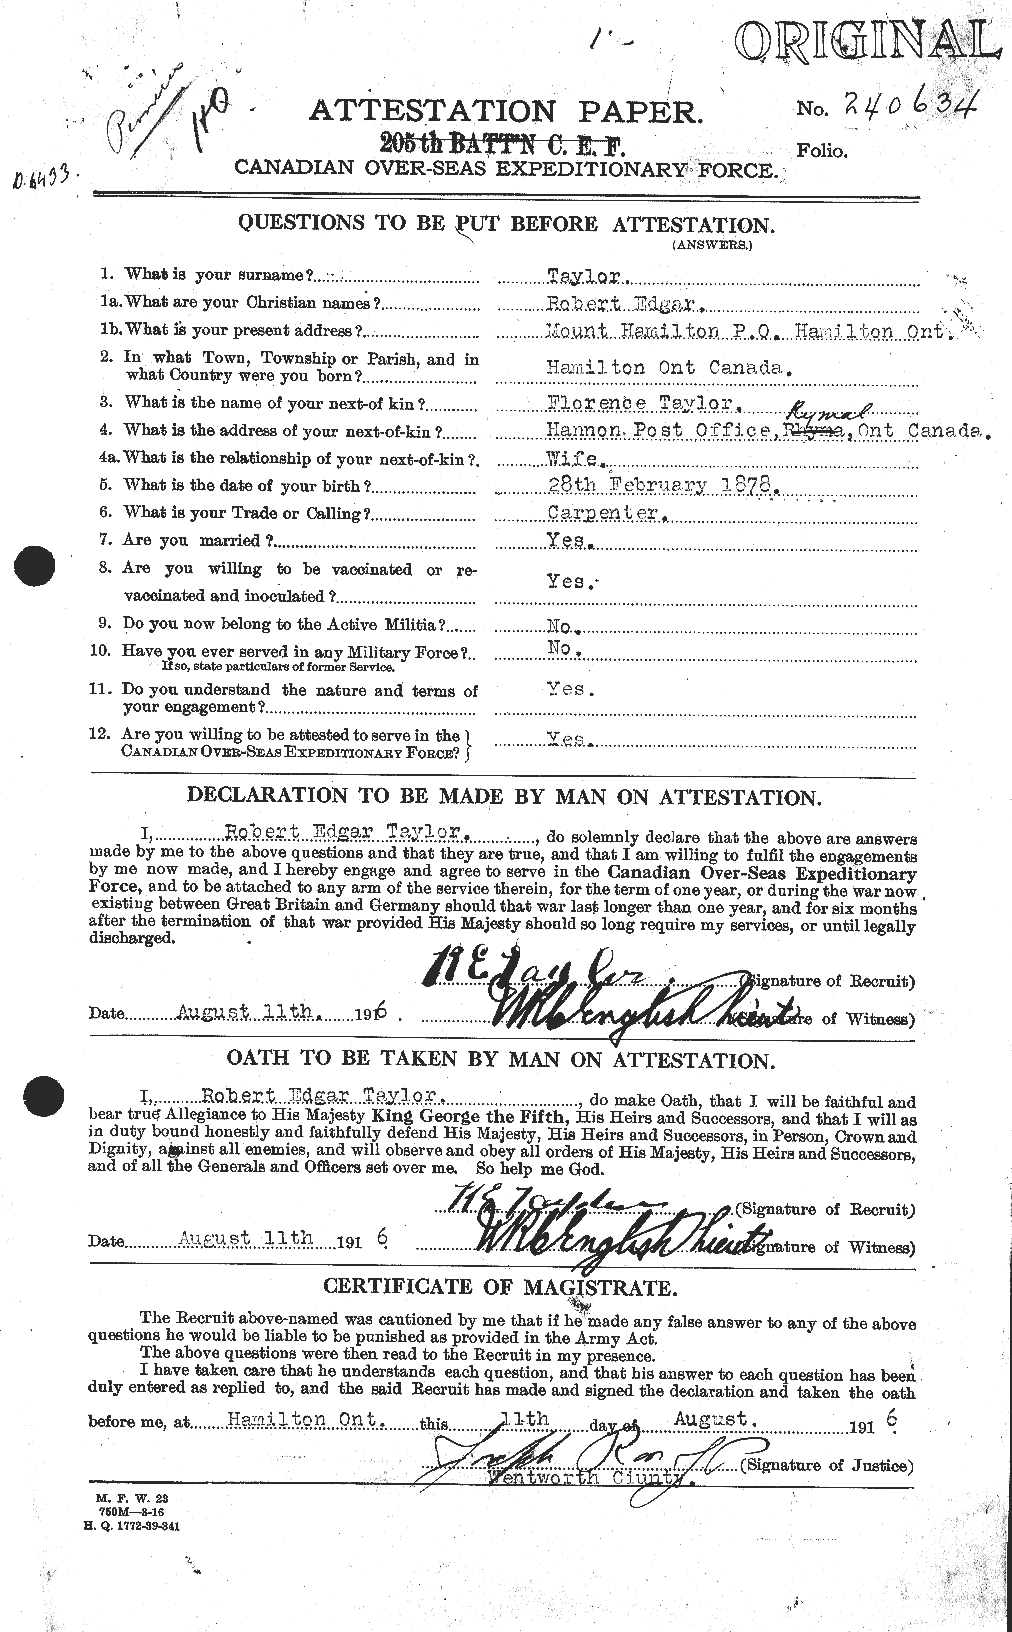 Dossiers du Personnel de la Première Guerre mondiale - CEC 627472a